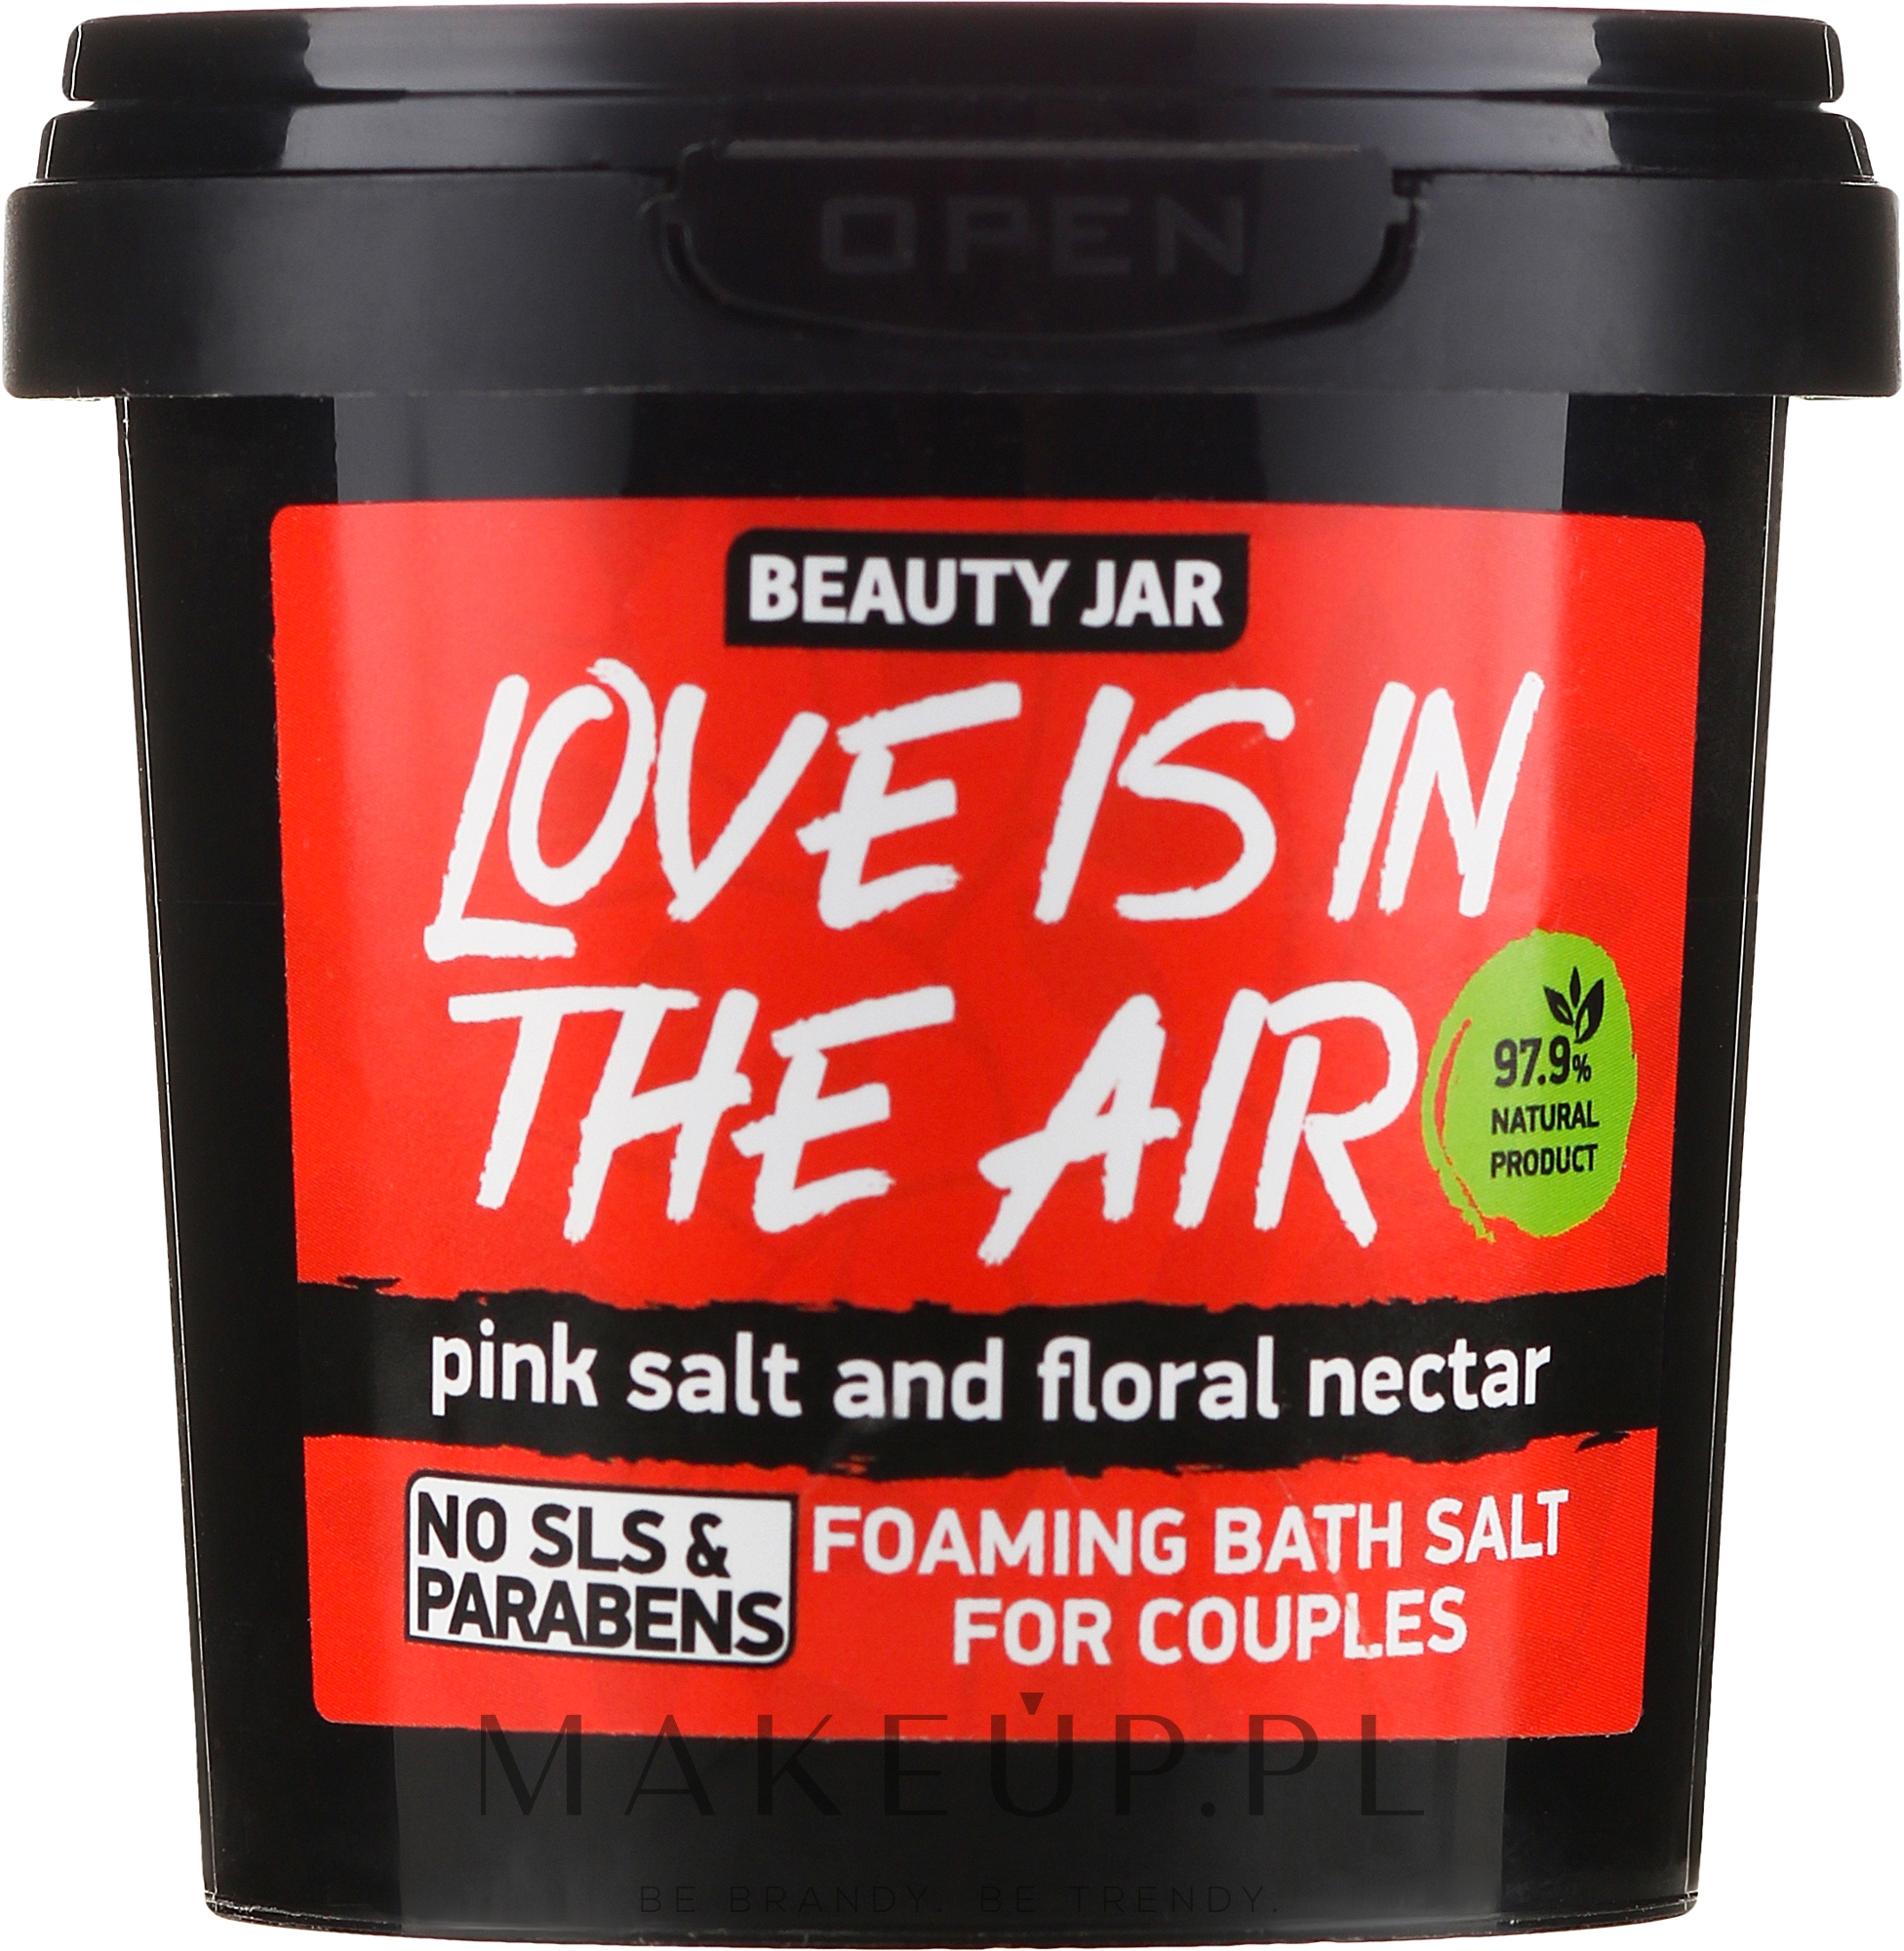 Beauty Jar „Love is in the air” – pieniąca się sól do kąpieli dla par 200g